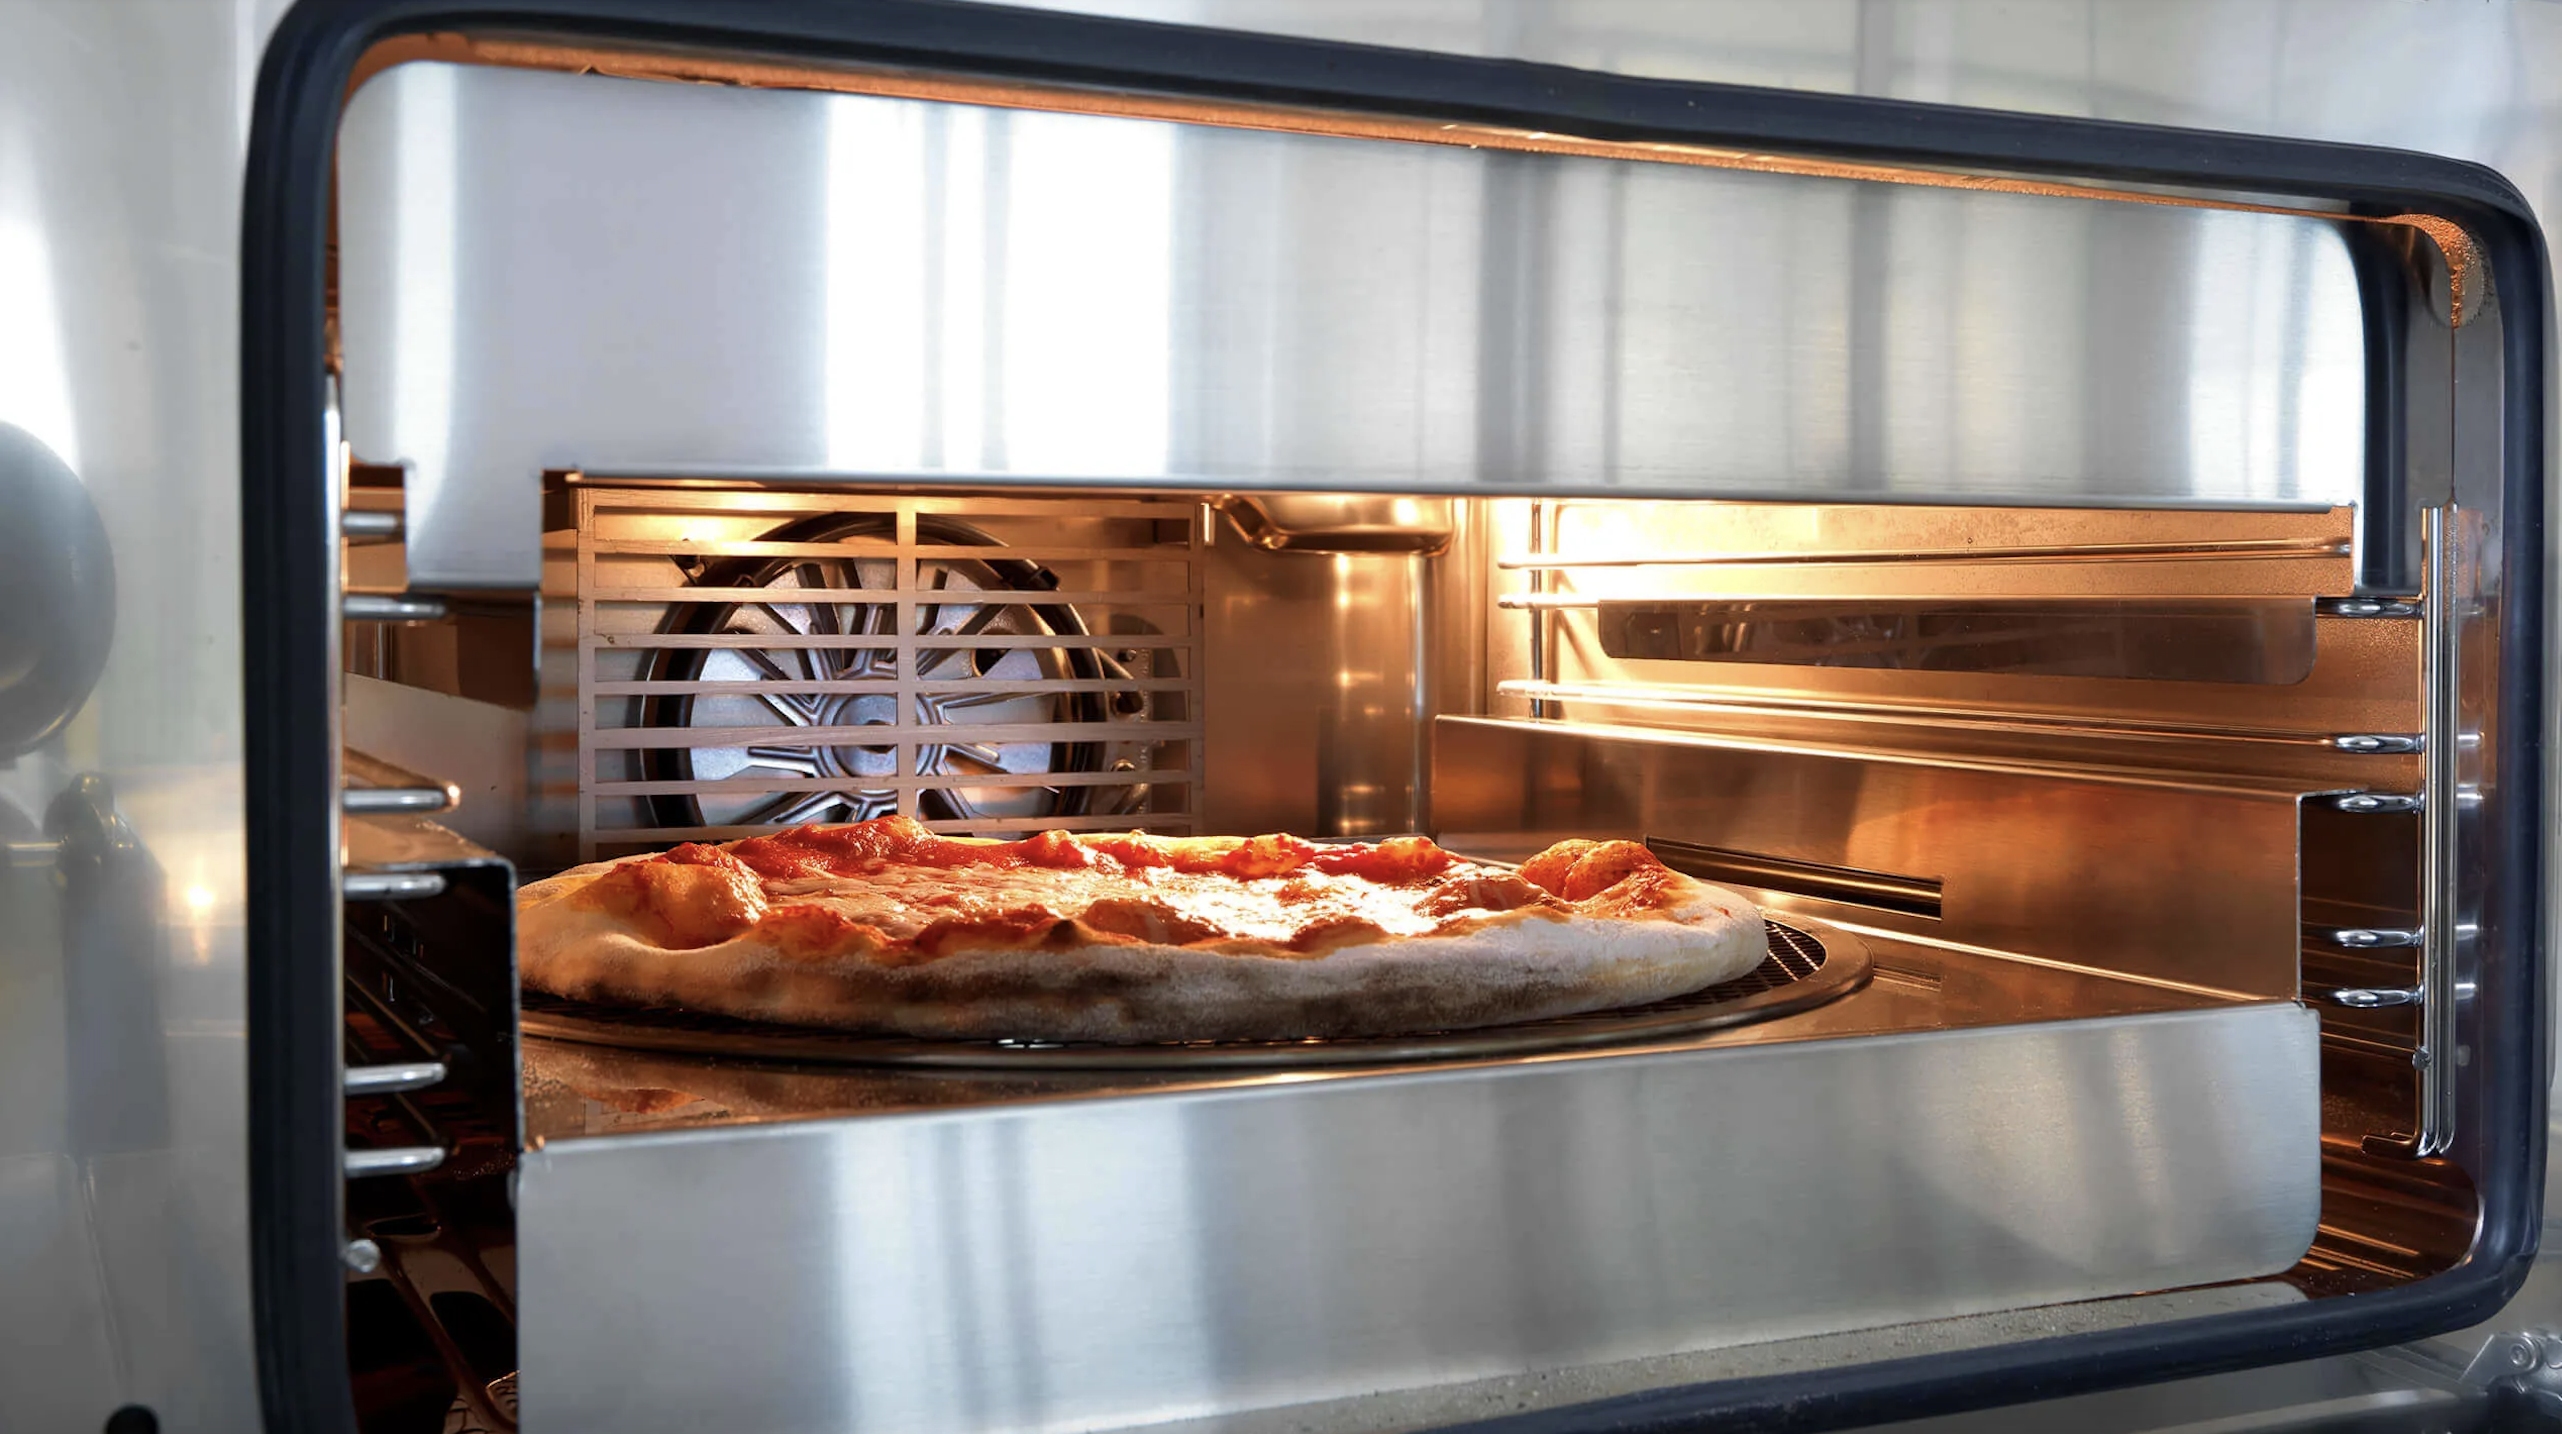 Kiezen Reusachtig Baron De perfecte inbouw oven voor de pizza lover! - UW-keuken.nl